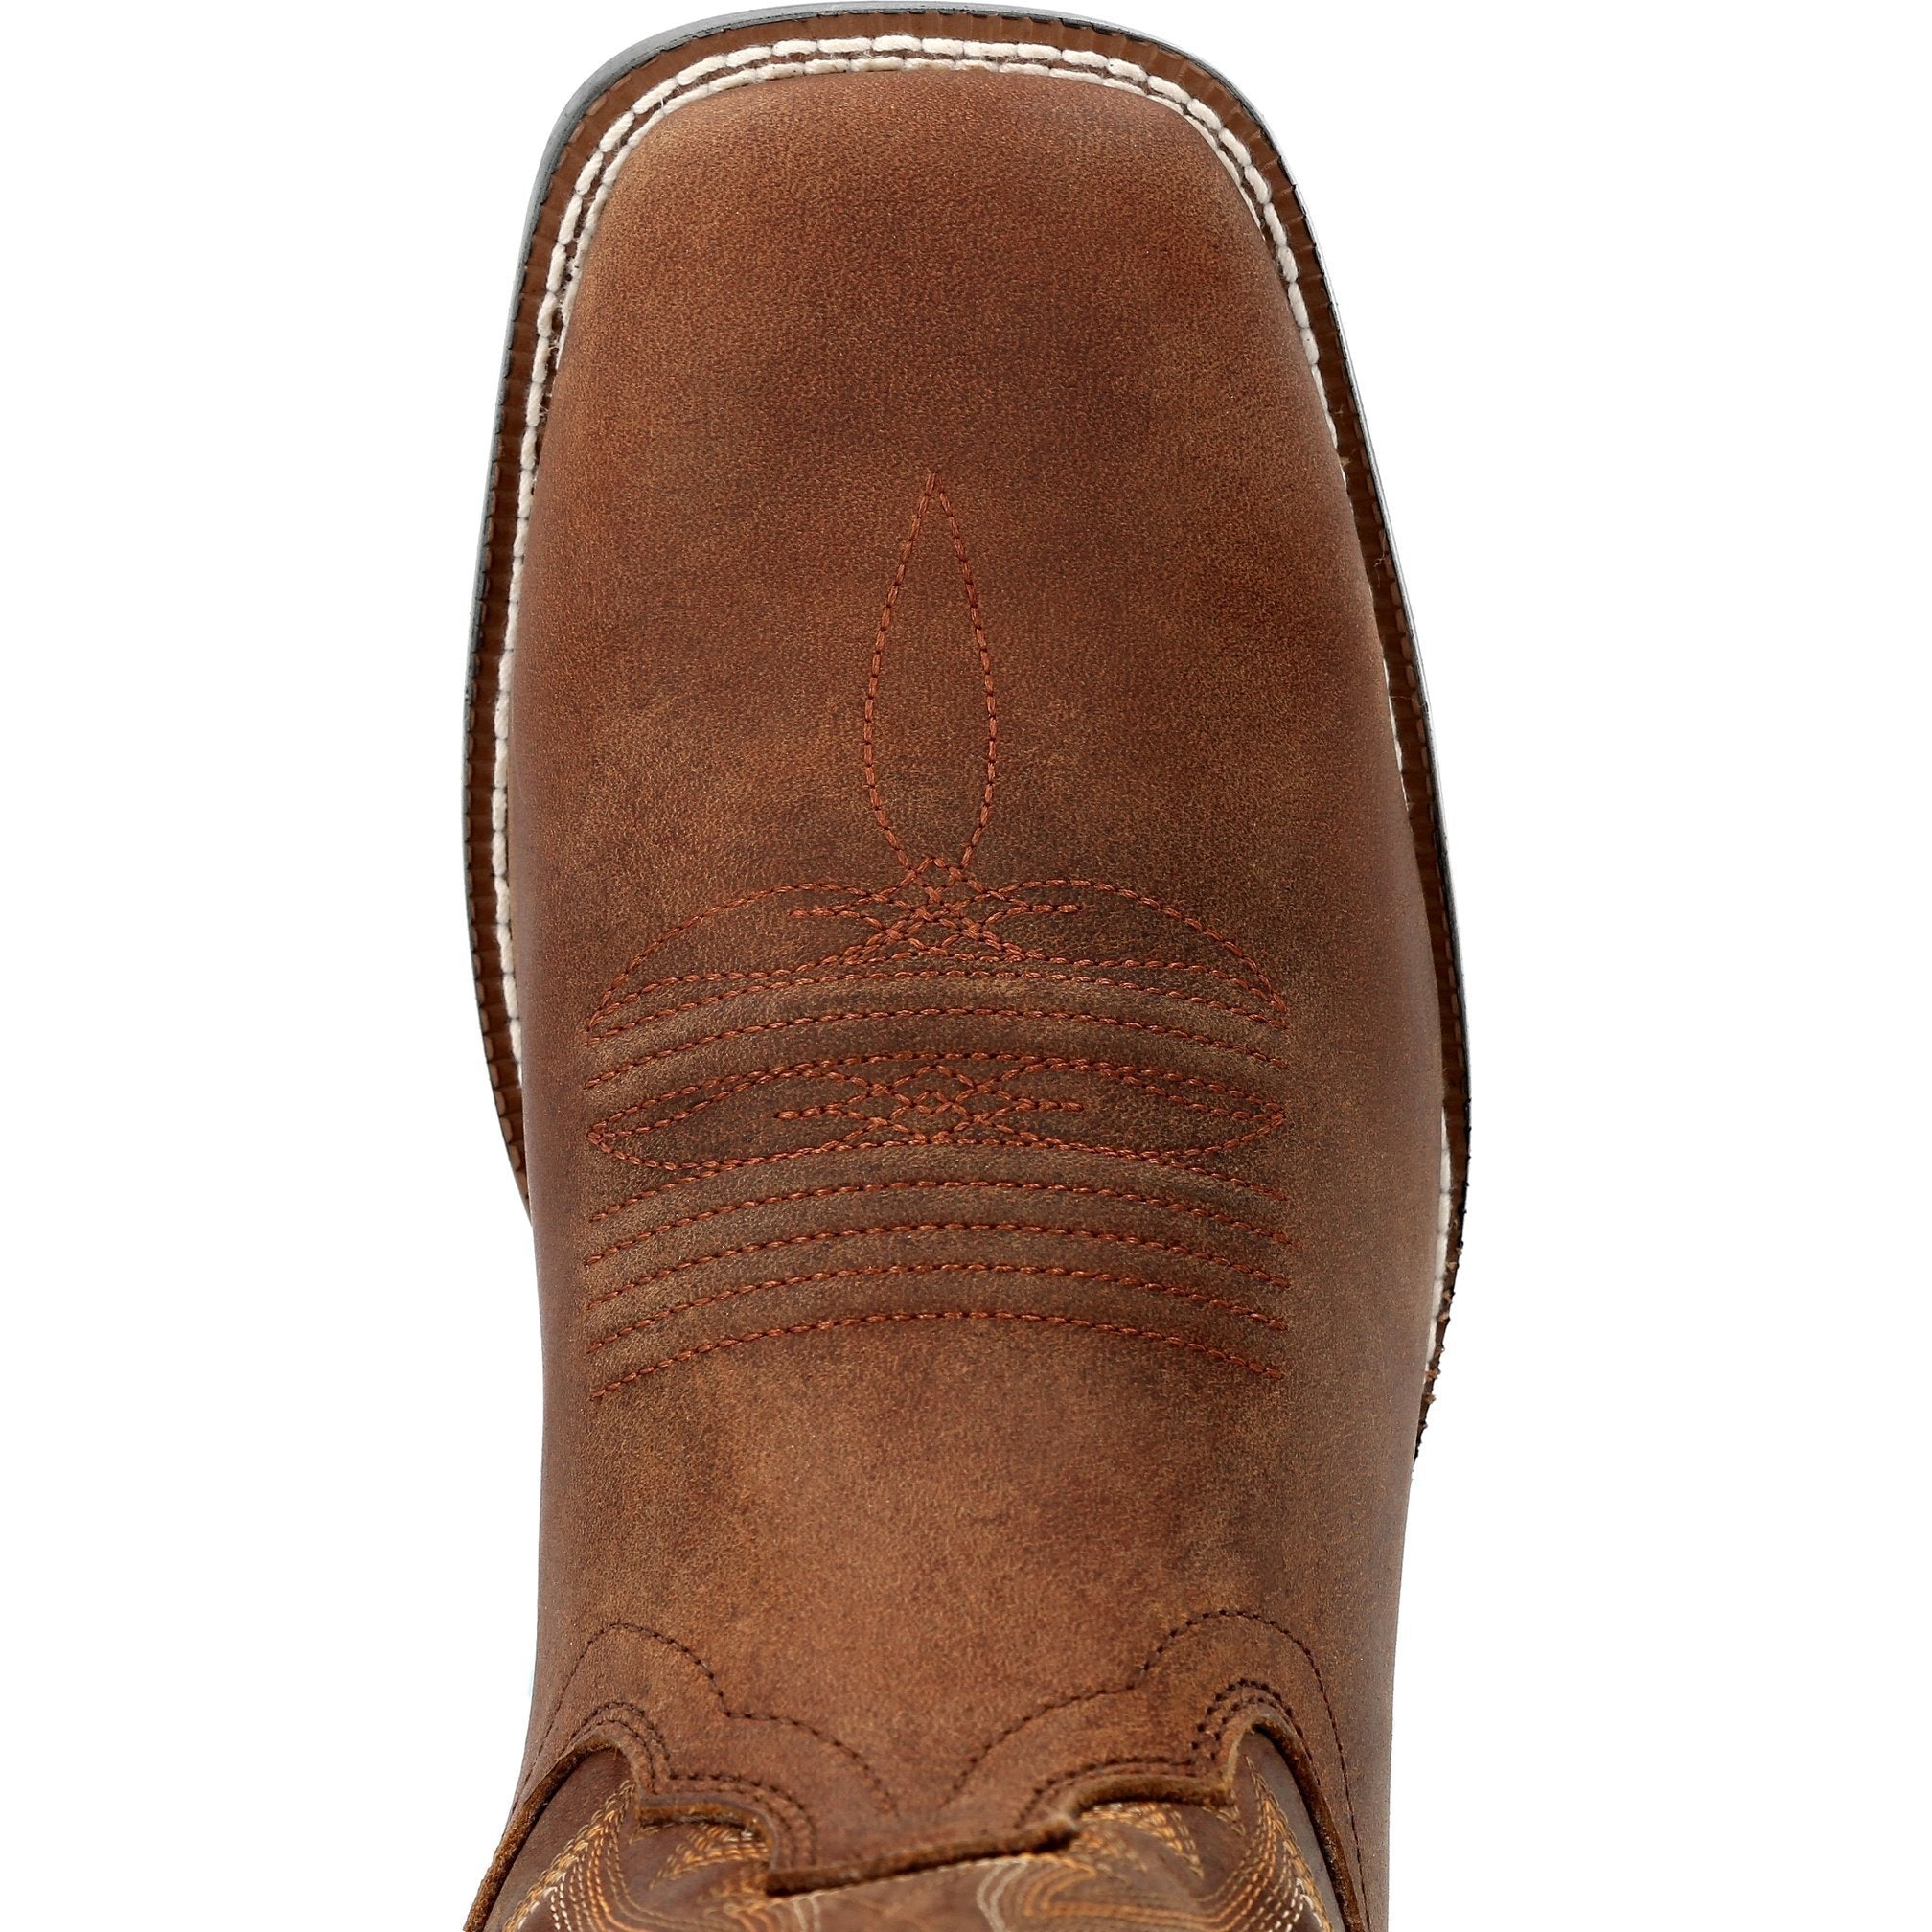 Durango Men's Westward™ 11" Square Toe Western Boot - Cognac - DDB0352  - Overlook Boots